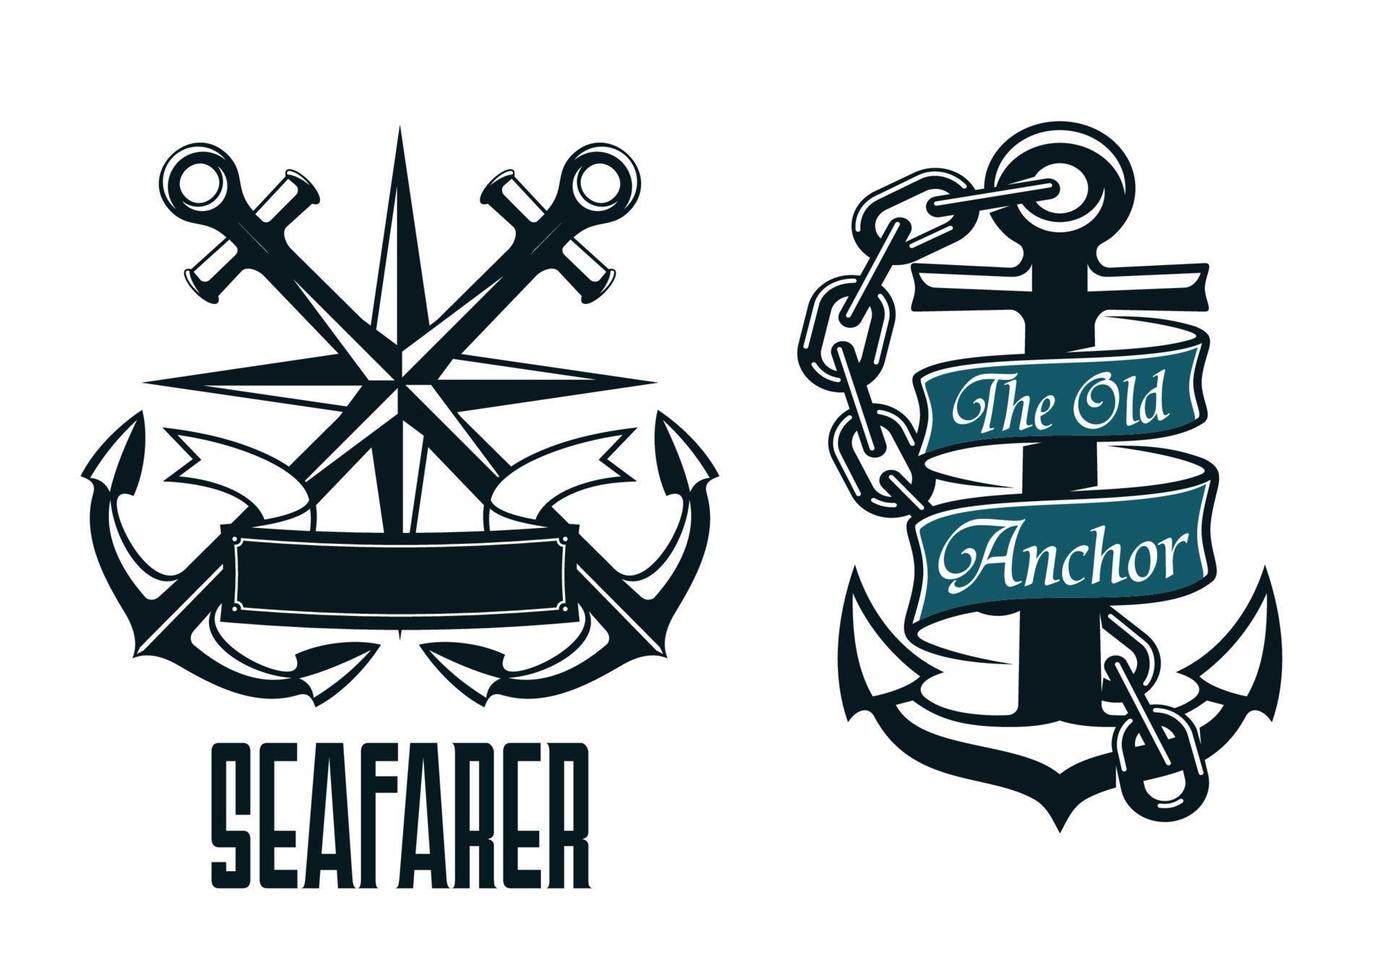 Seafarer marine heraldic emblem and symbol vector